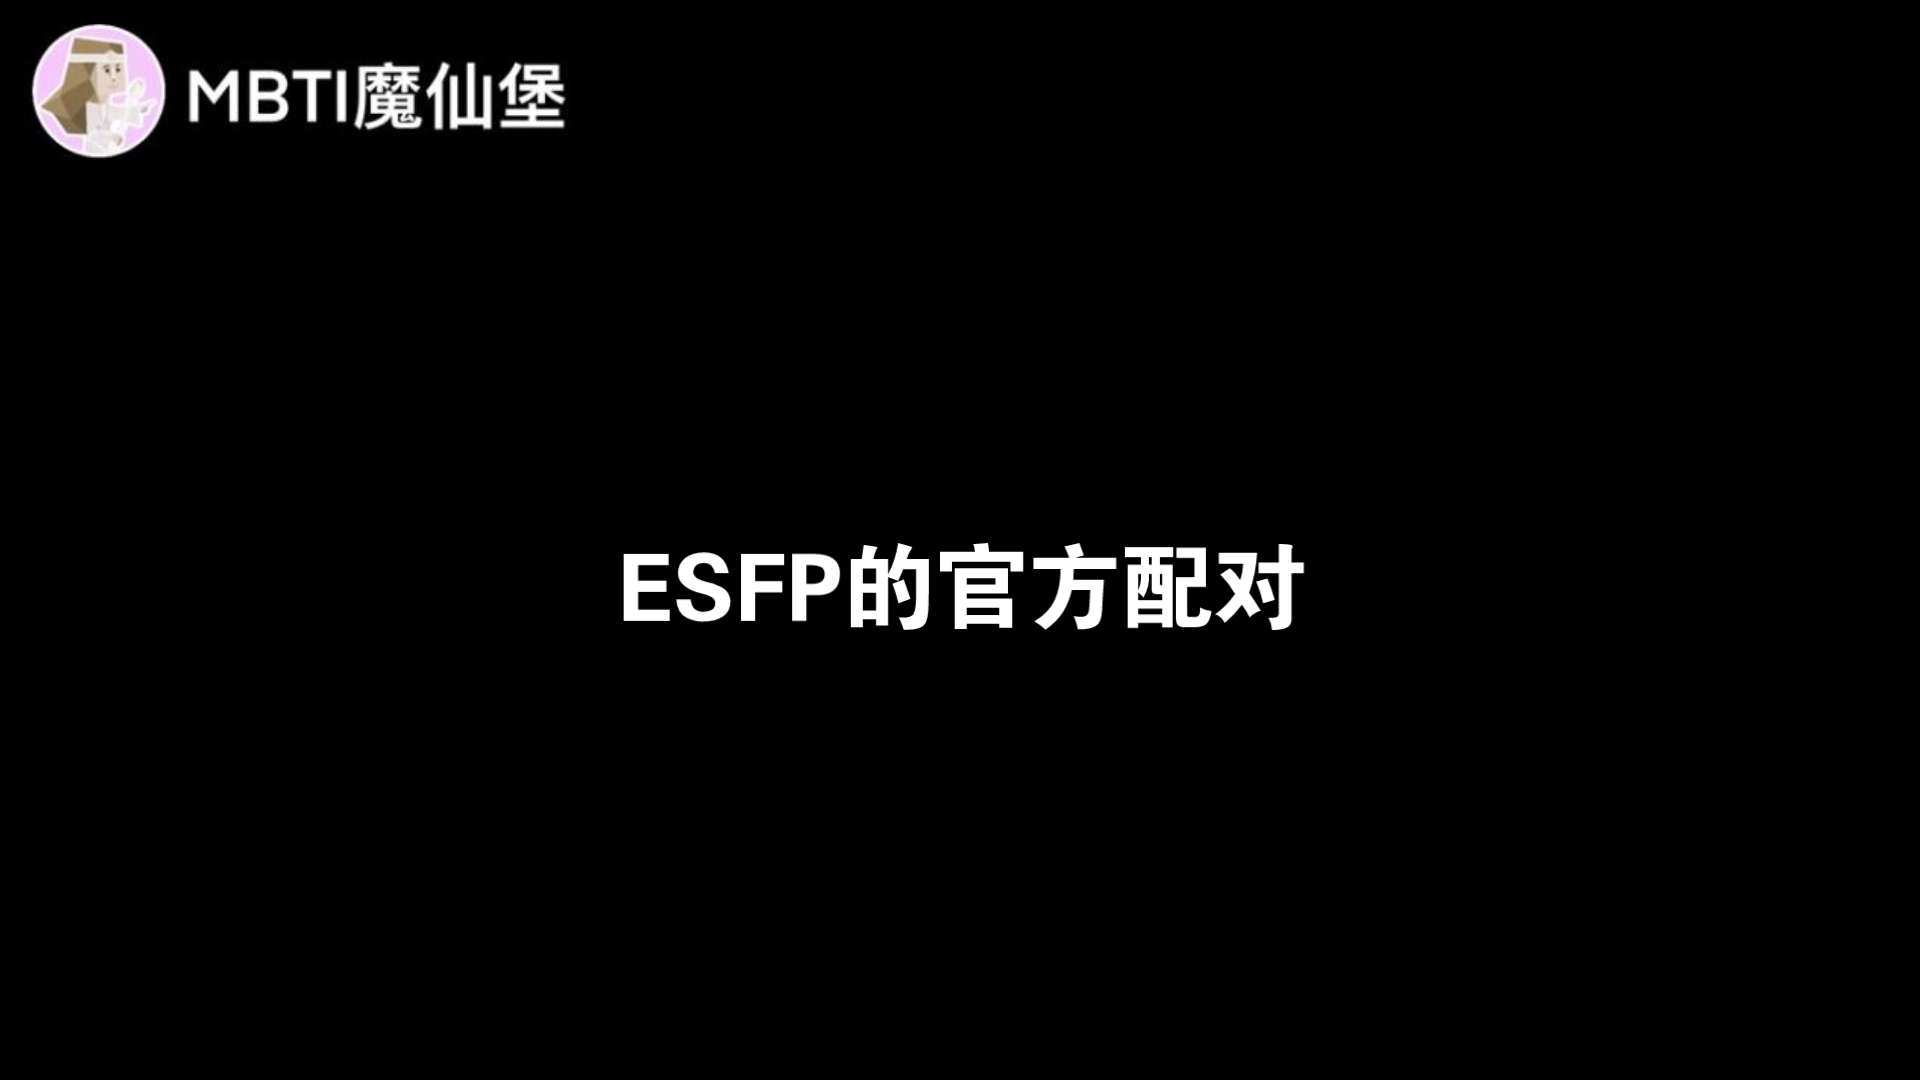 ESFP的官方配对